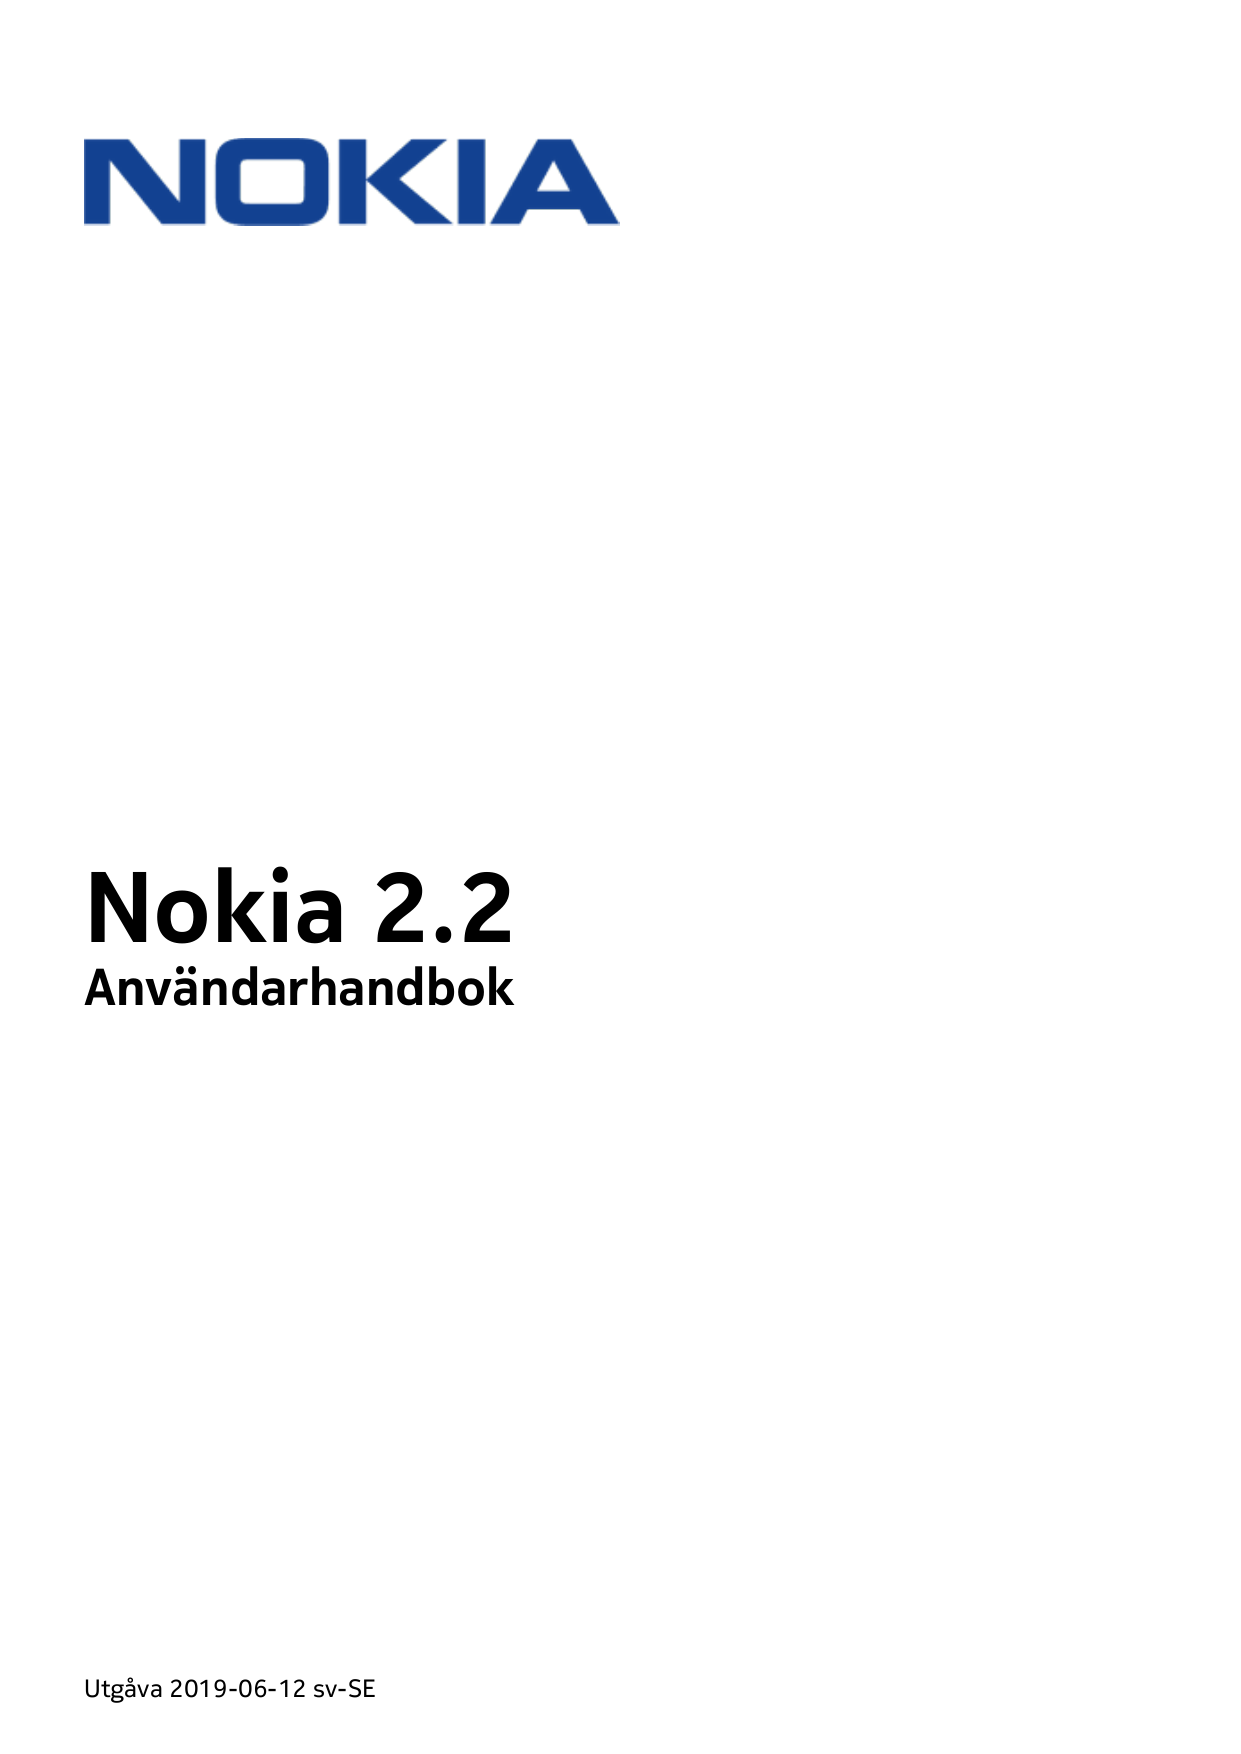 Nokia 2.2AnvändarhandbokUtgåva 2019-06-12 sv-SE